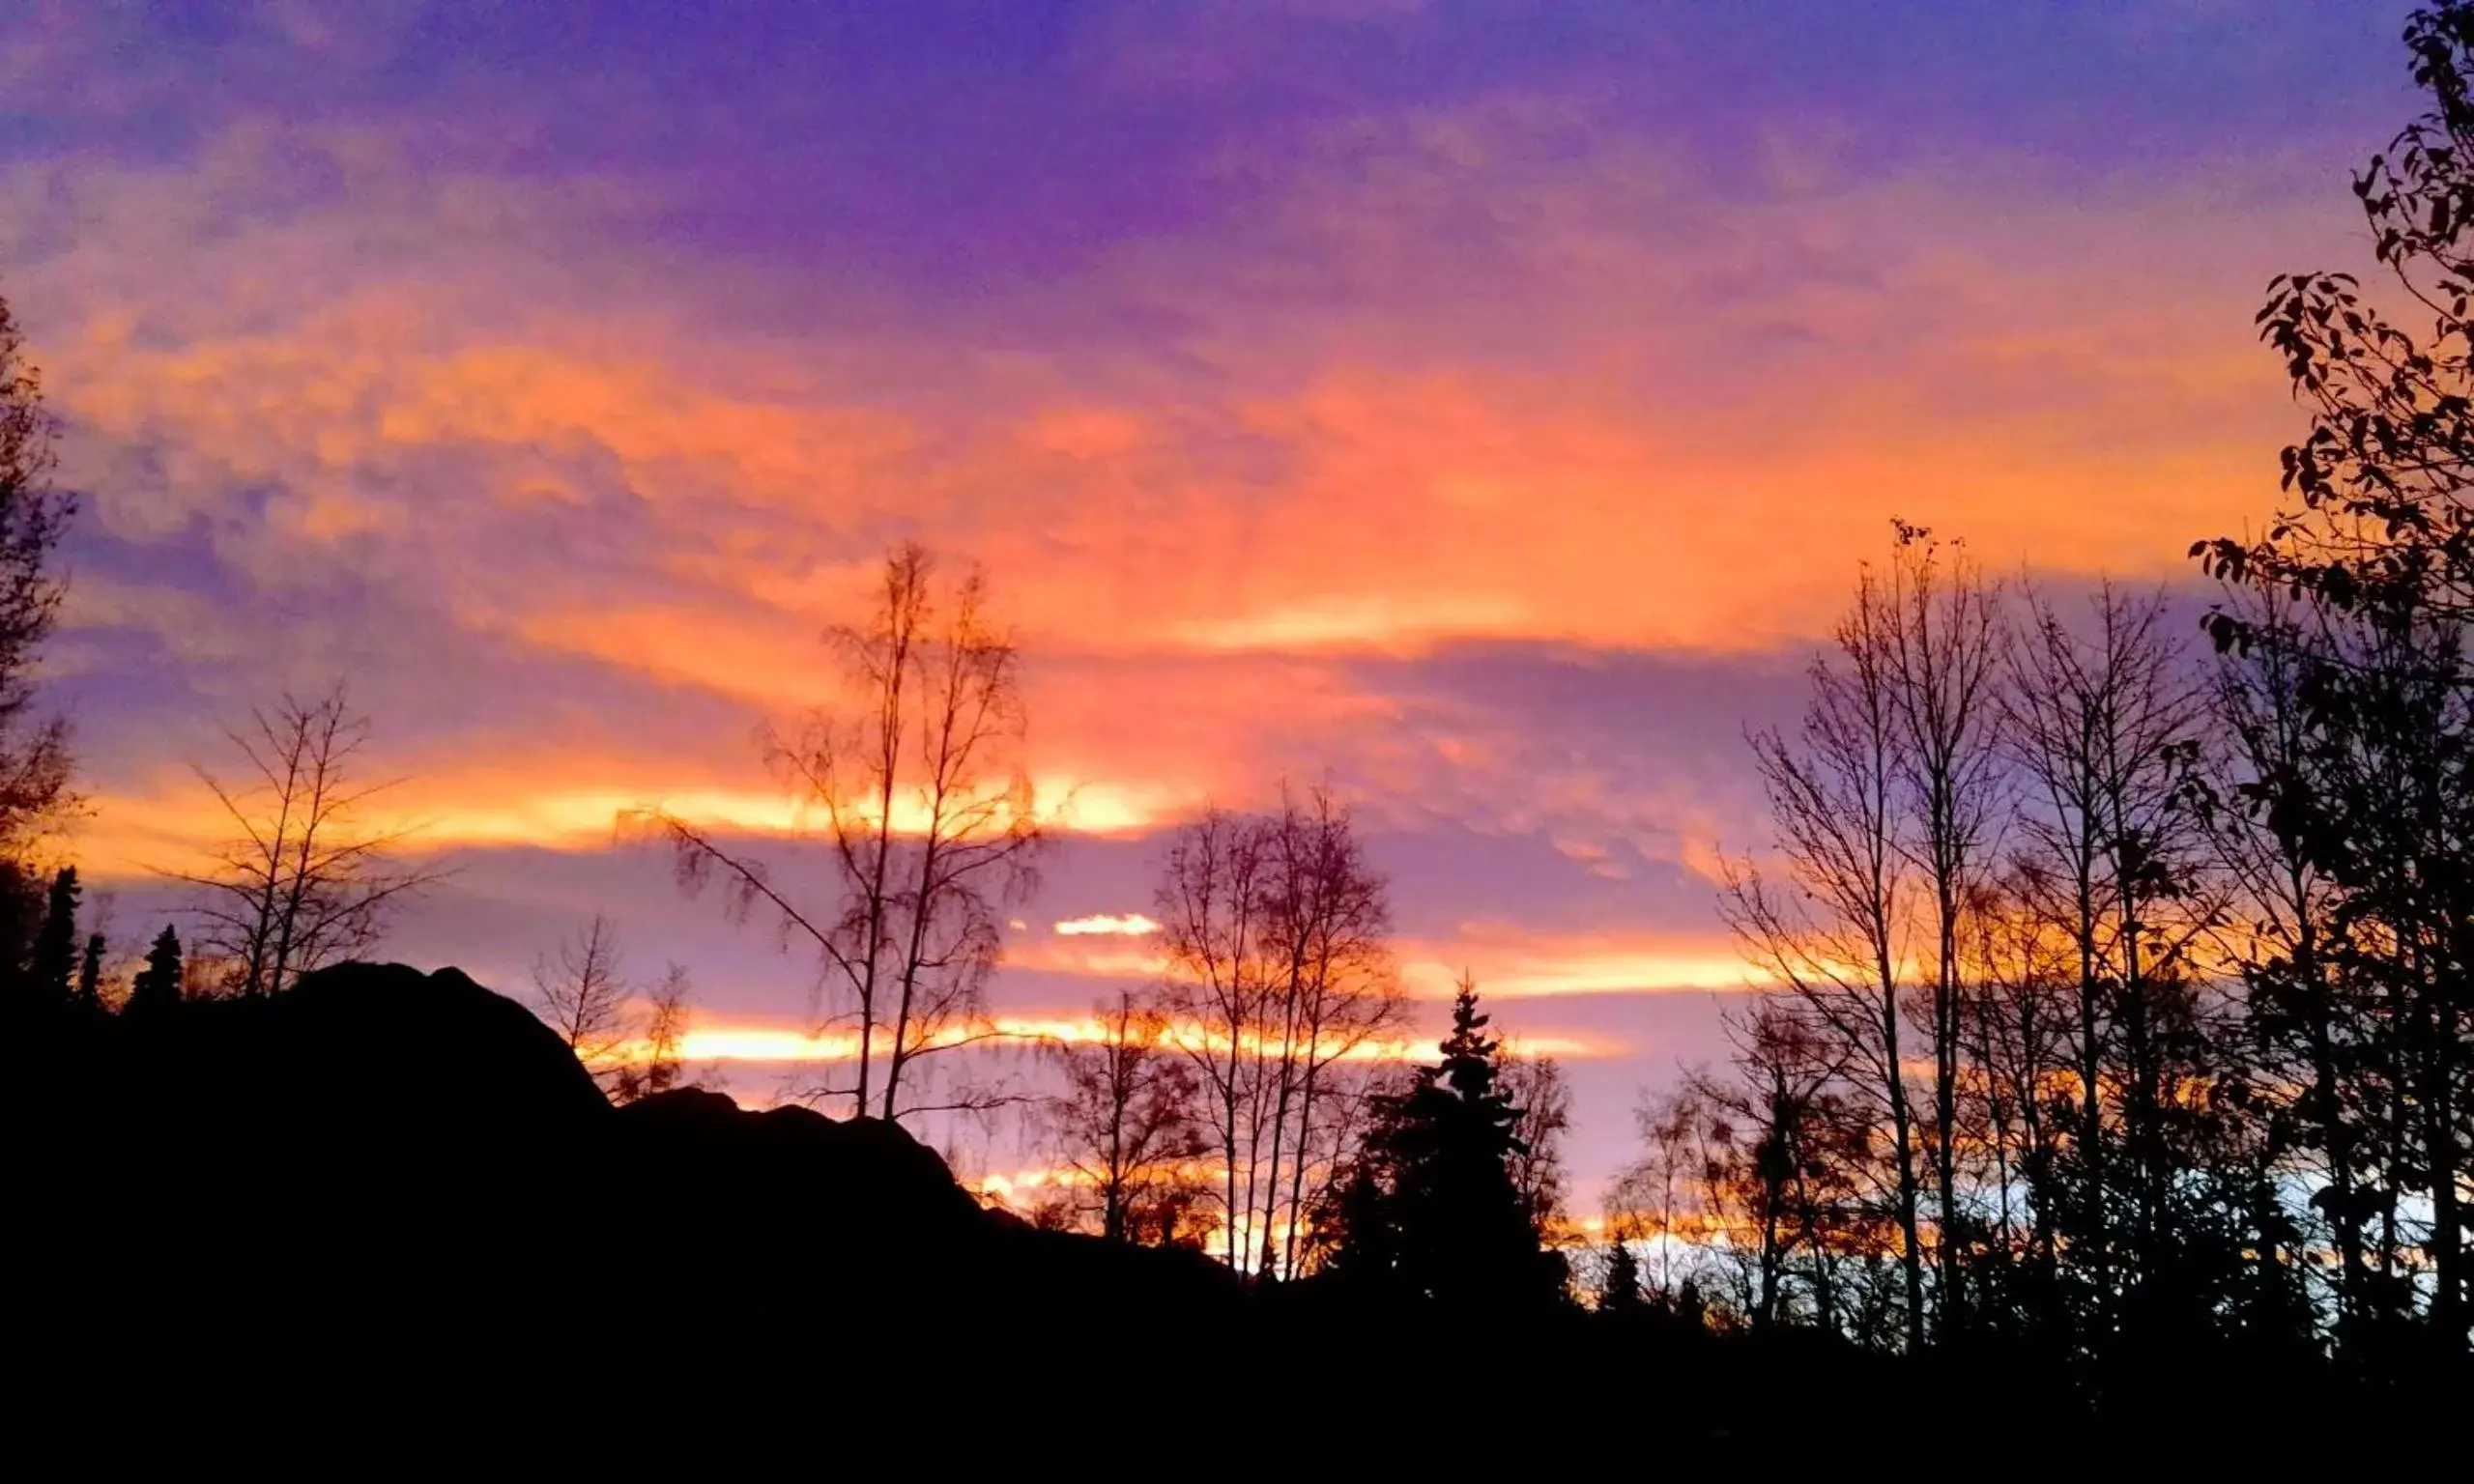 Sunrise/Sunset in Alaska Chalet Bed & Breakfast